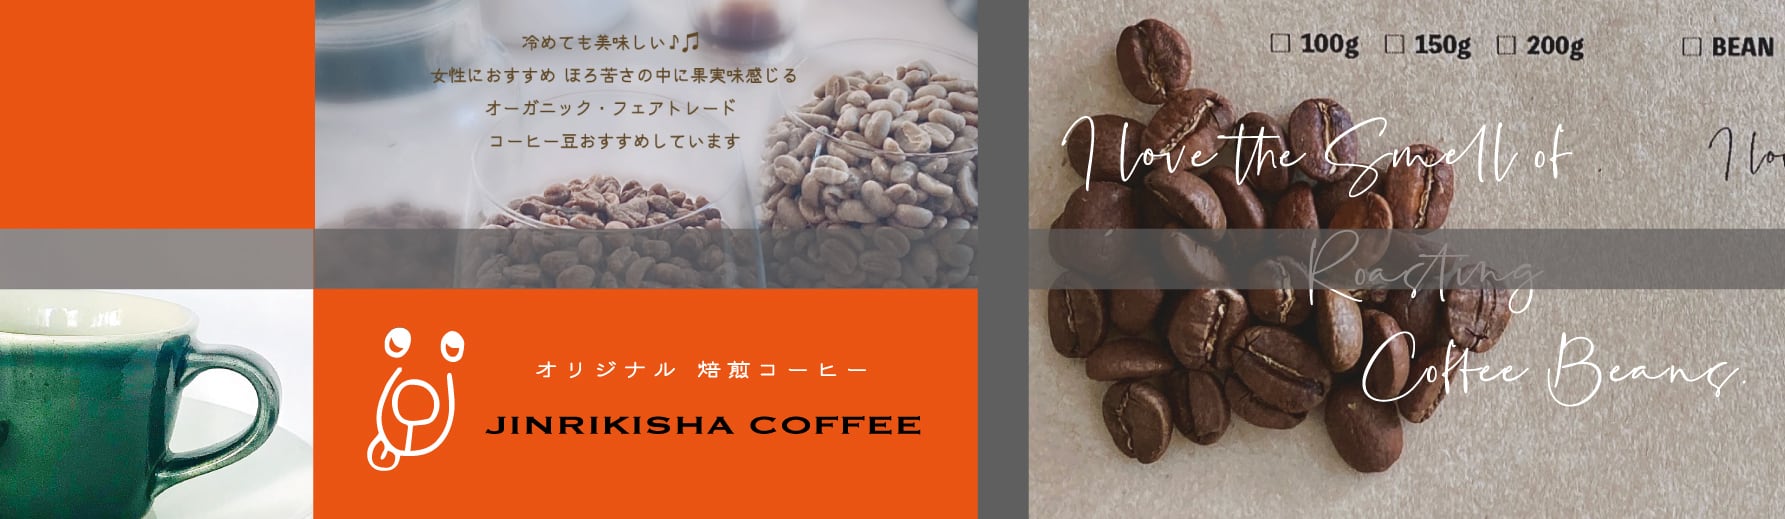 Jinrikisha coffee  オーガニック&フェアートレードのコーヒー豆を取りそろえています